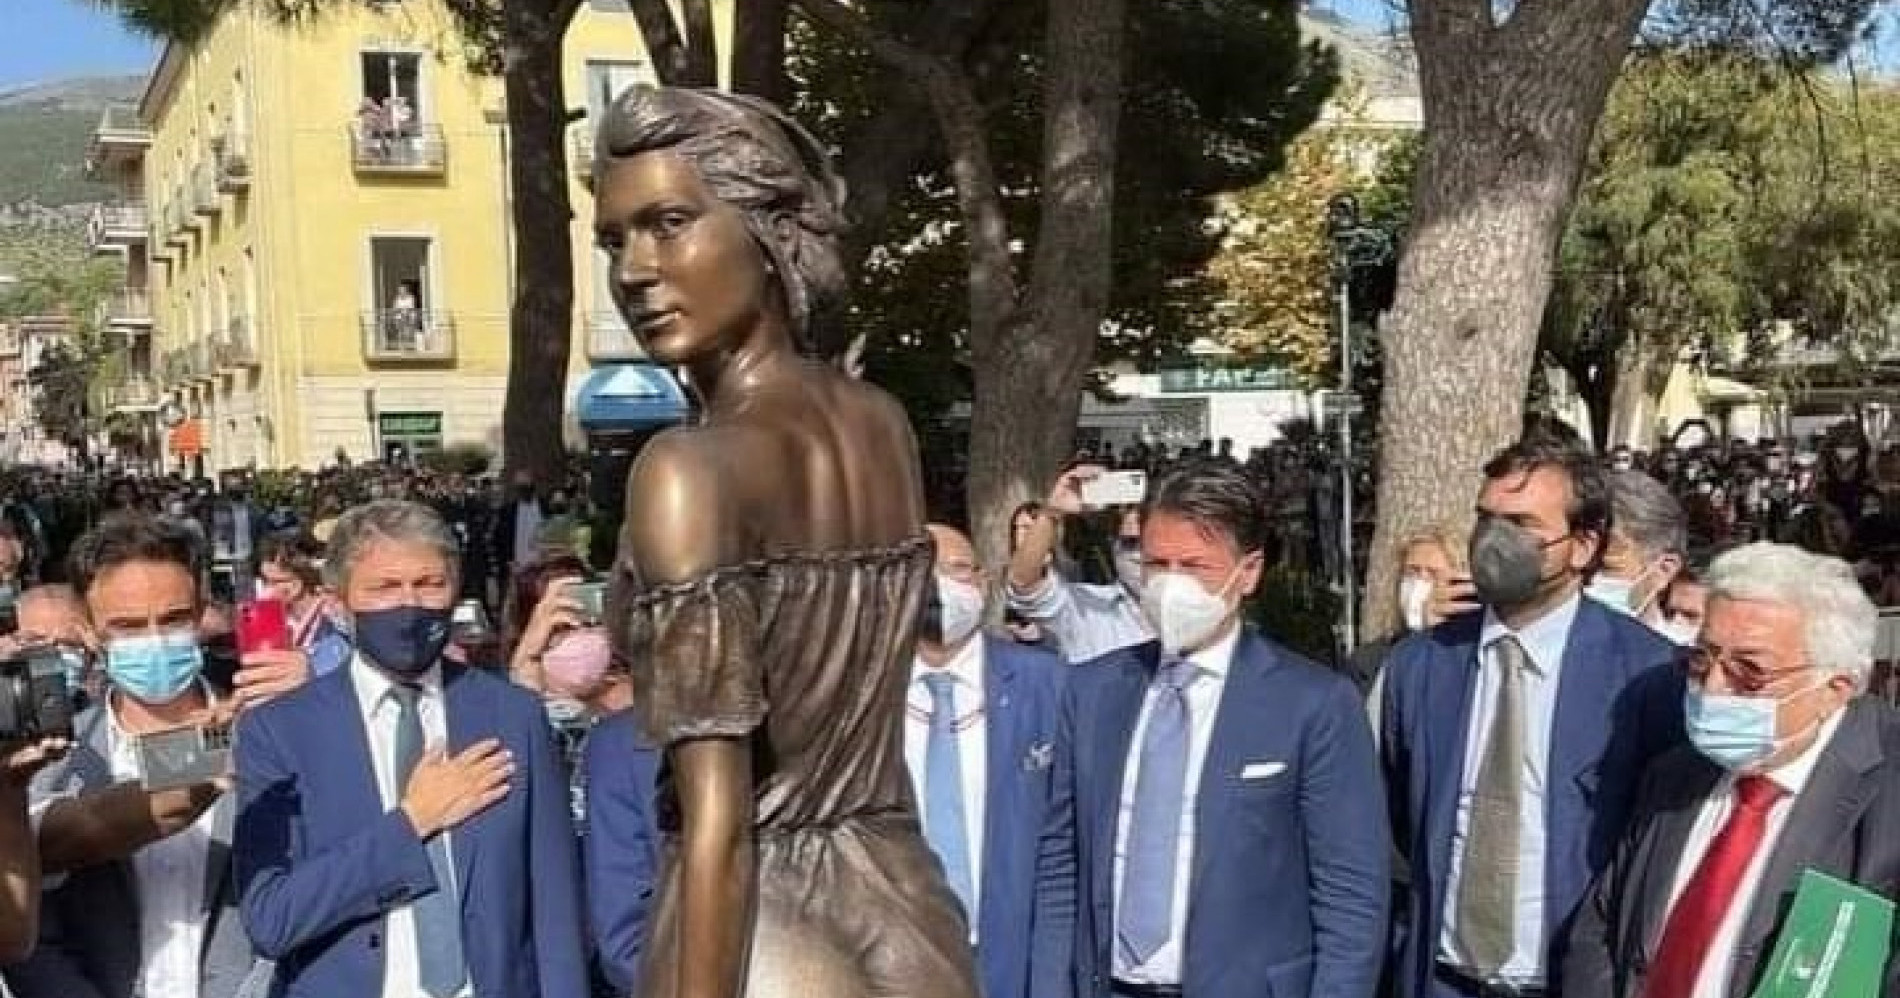 Waduh, Patung Wanita 'Berpakaian' Minim di Italia Picu Kontroversi